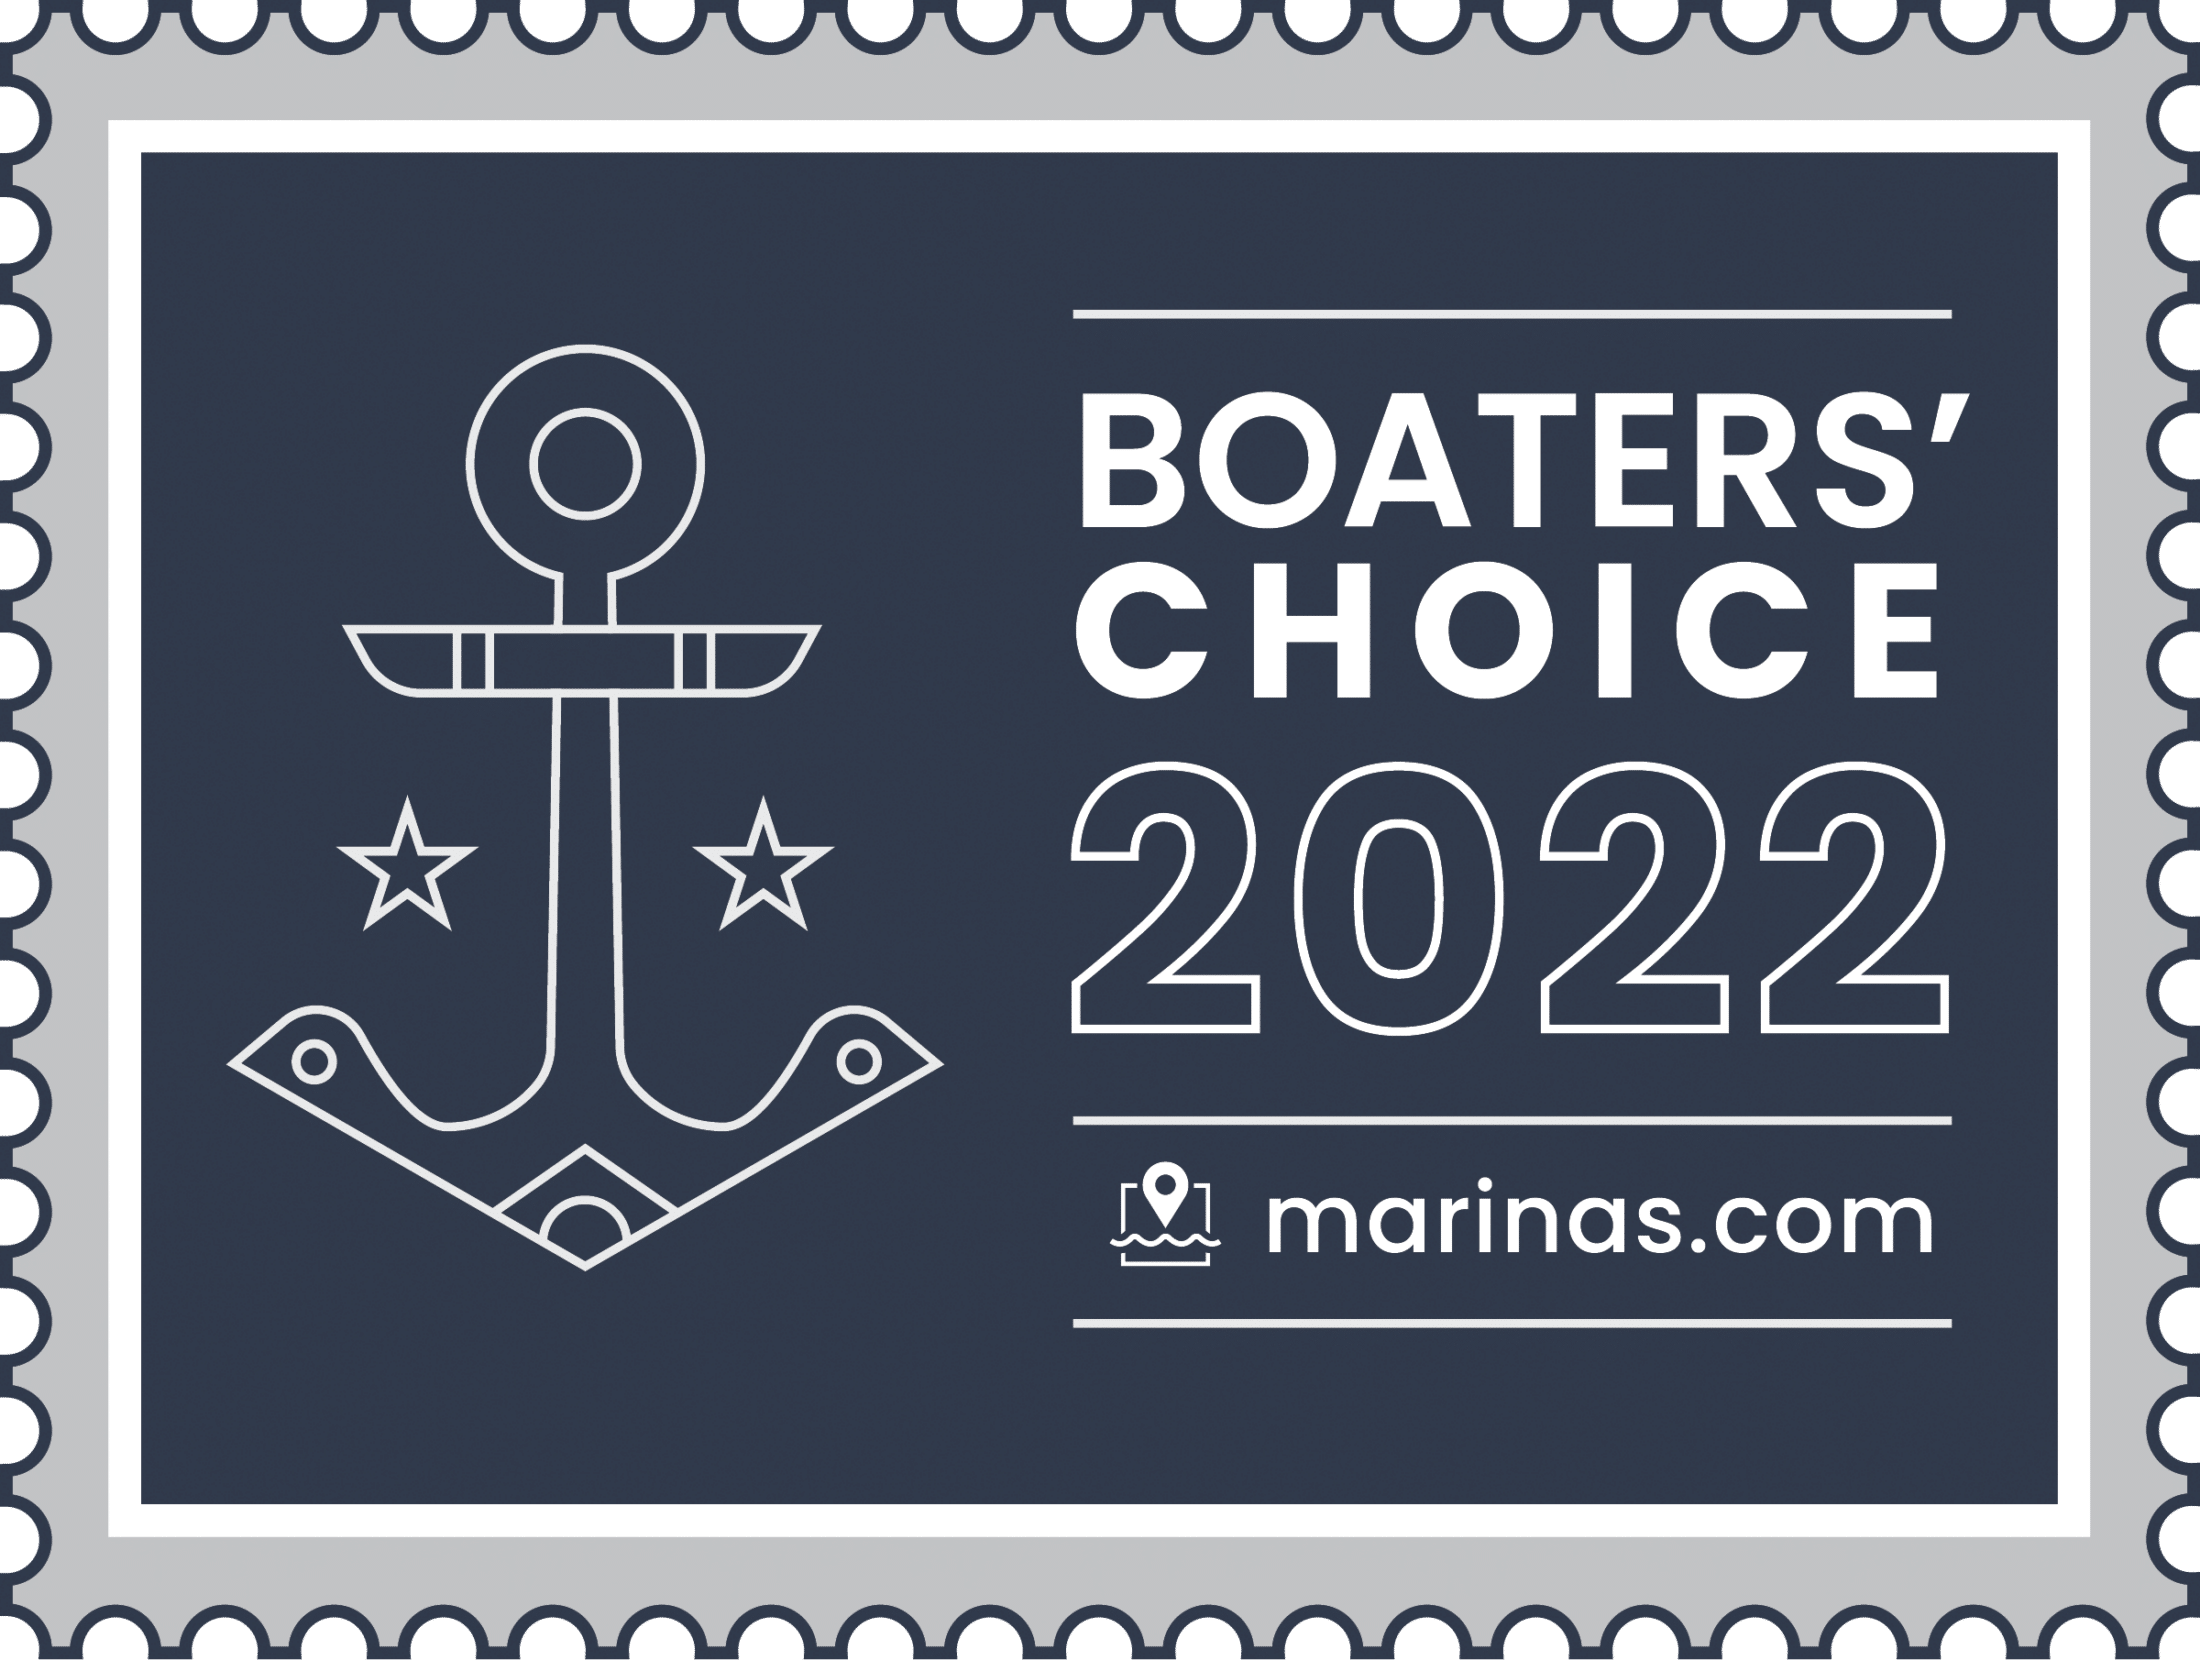 Marinas.com 2022 Boaters' Choice Award logo